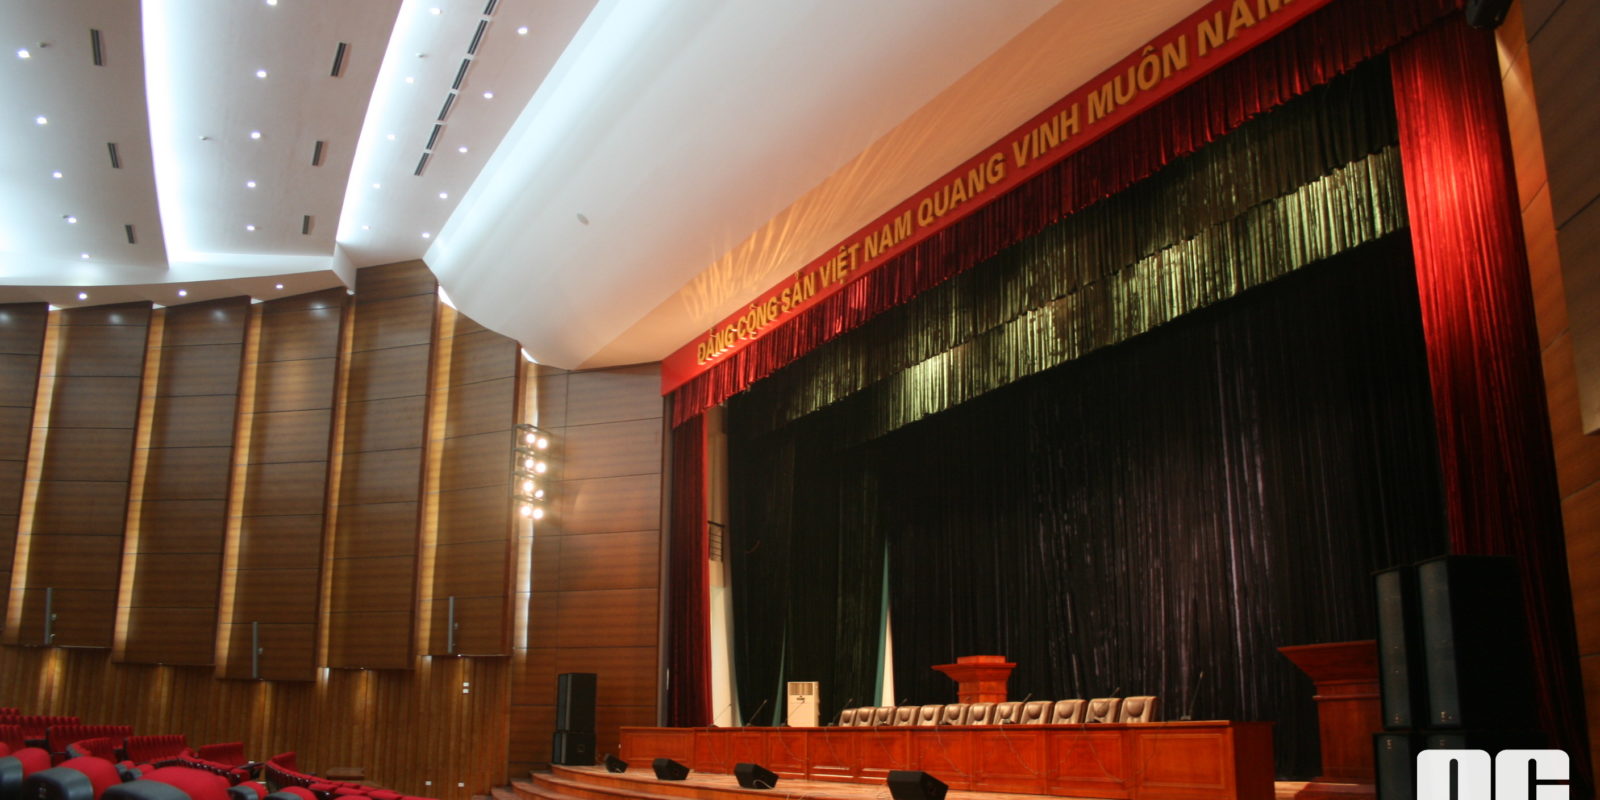 Lao Cai Conference Center